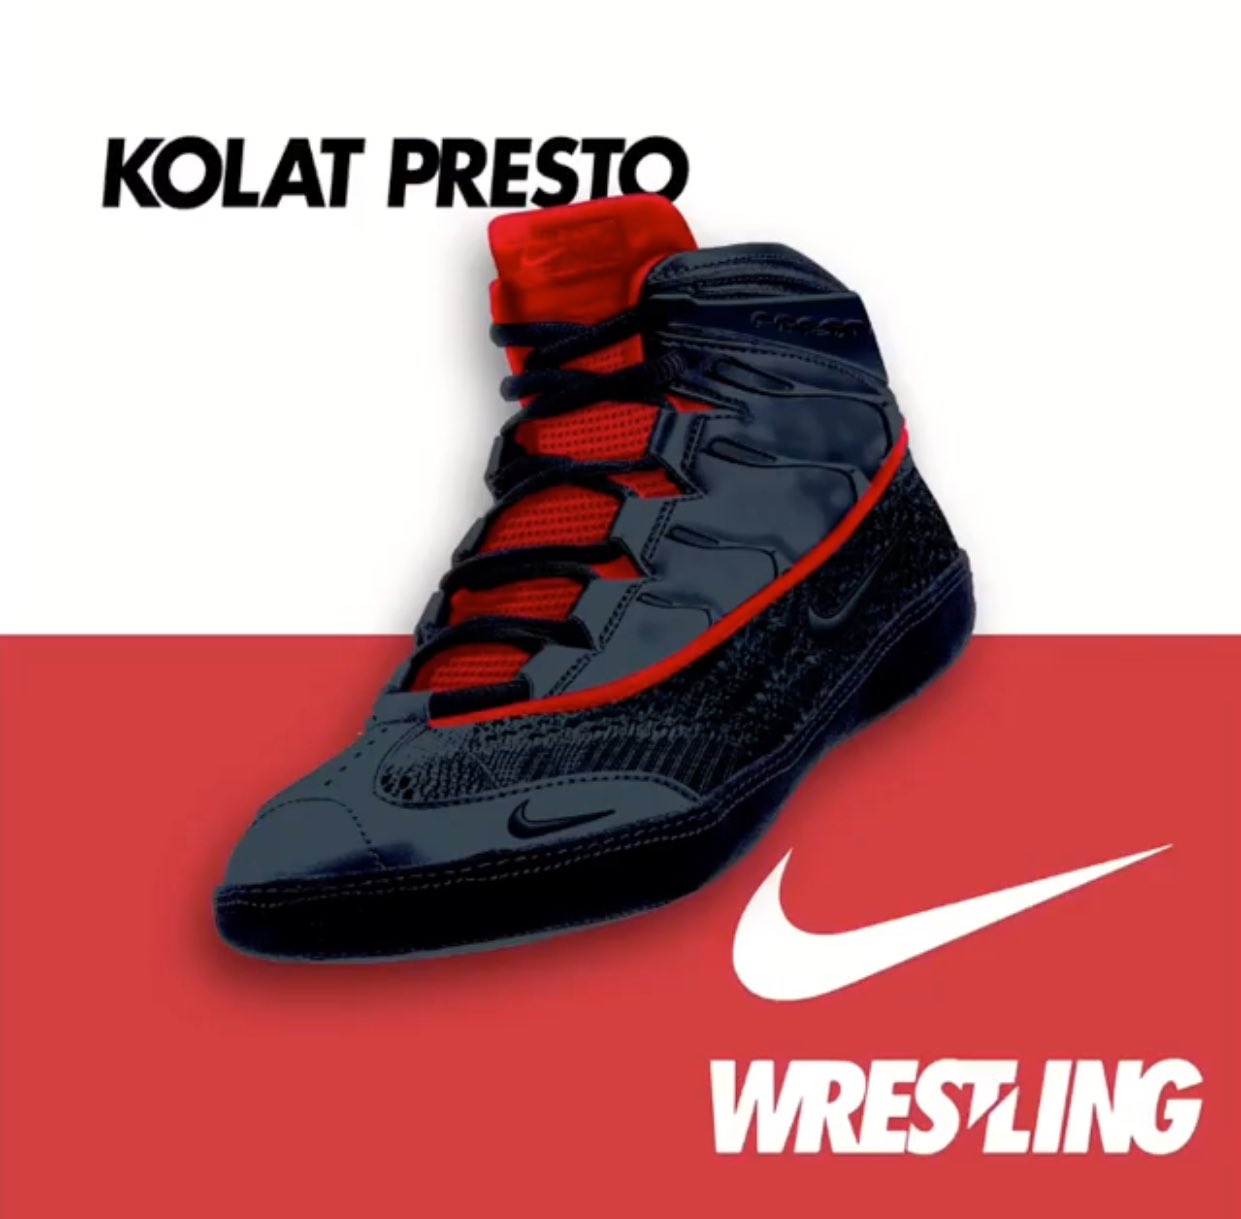 Nike wrestling's Kolat Presto 